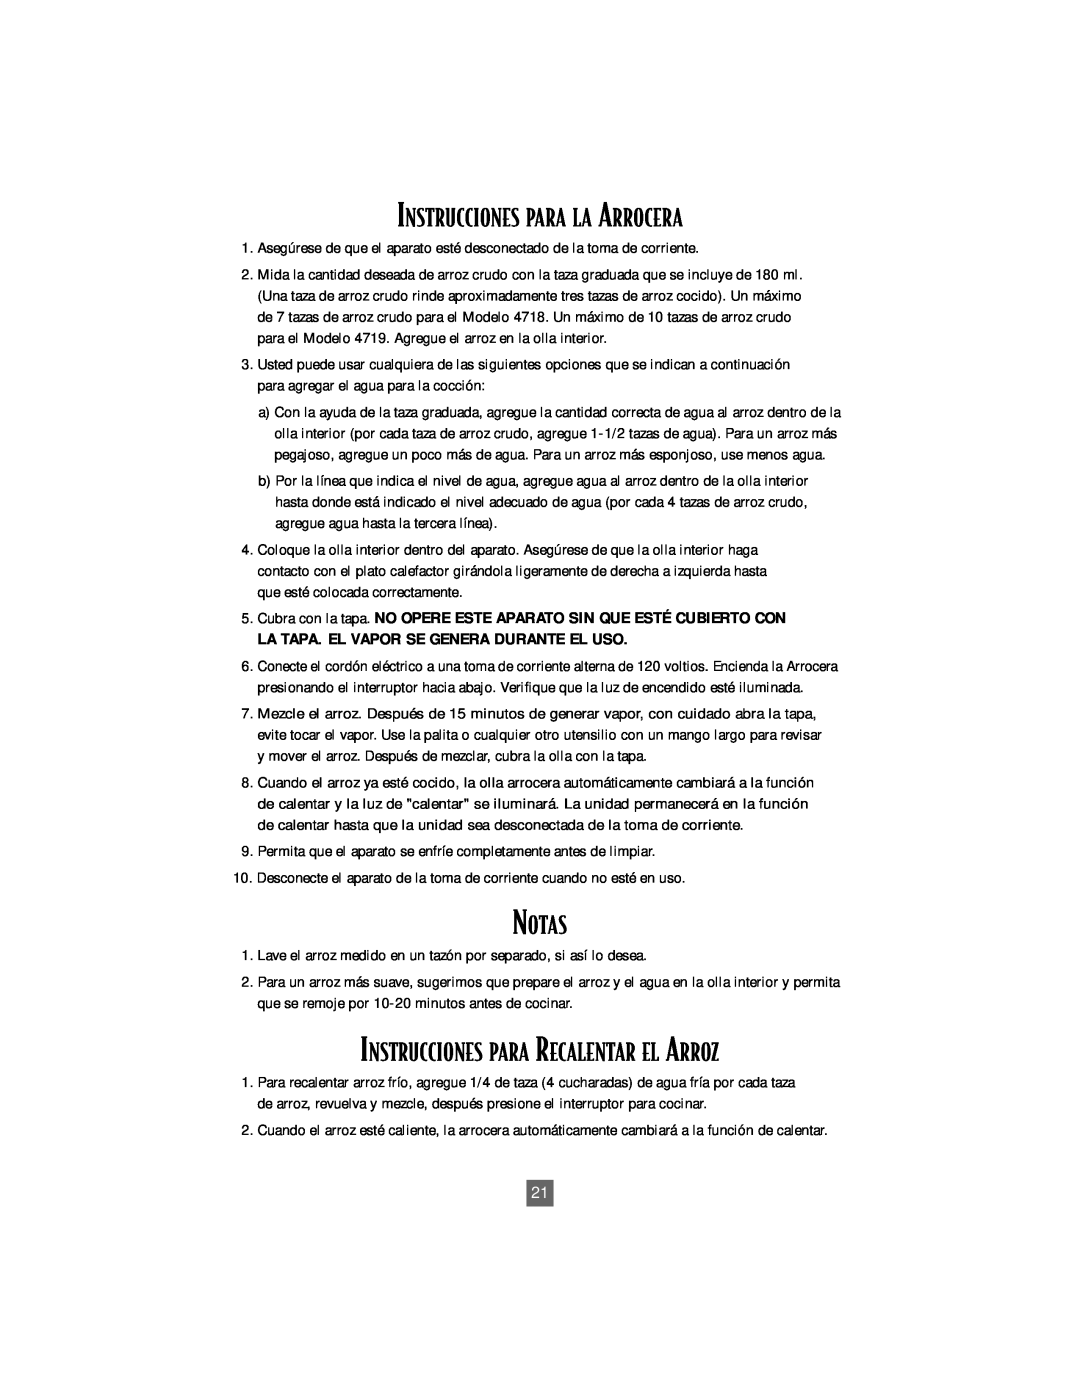 Oster 4718 instruction manual Instrucciones Para La Arrocera, Notas, Instrucciones Para Recalentar El Arroz 